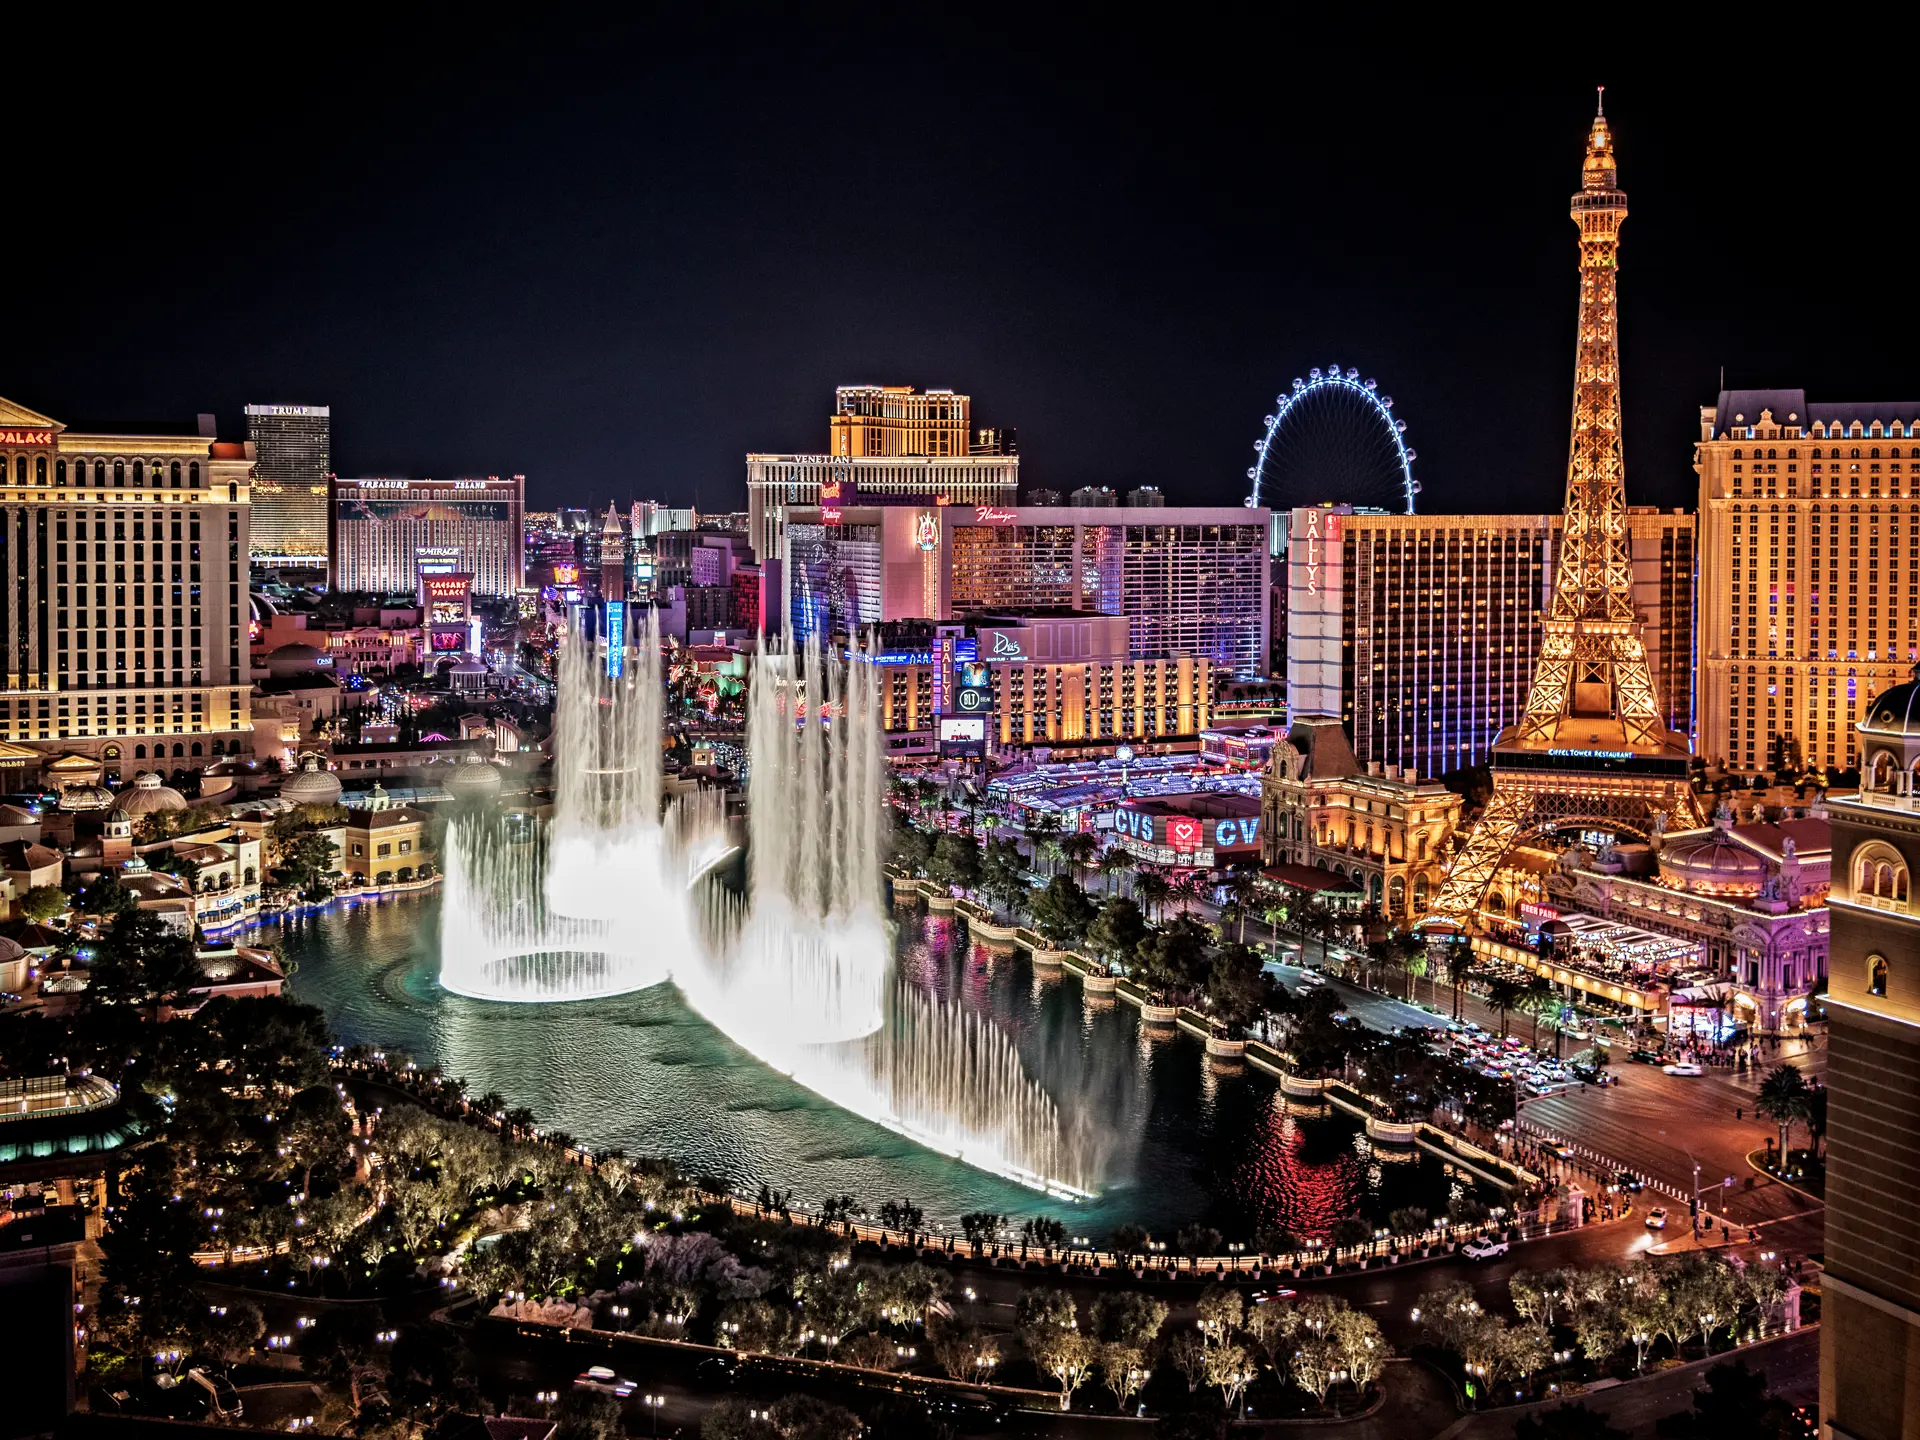 Las Vegas by Night med Belaggio springvandet i forgrunden - shutterstock_1091396189.jpg